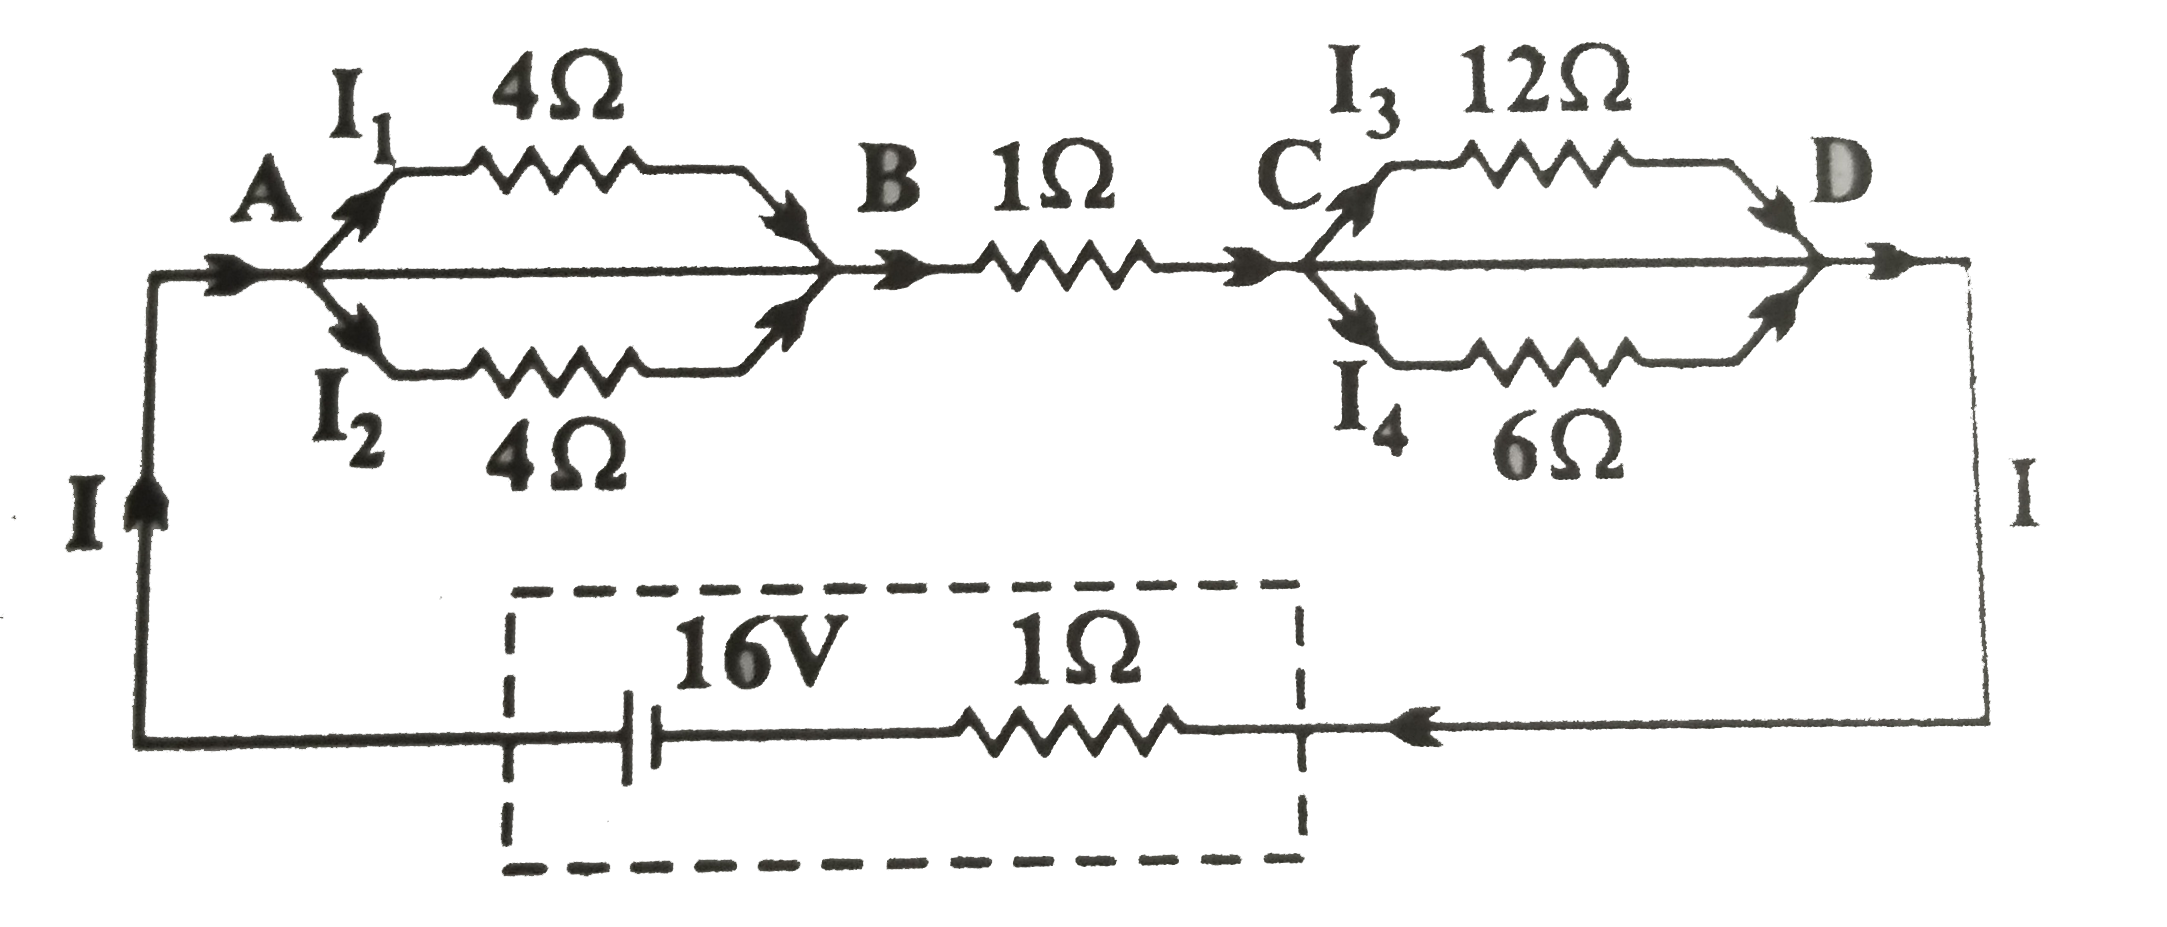 चित्र में दिखाए गए अनुसार 1Omega आंतरिक प्रतिरोध के 16V की एक बैटरी से एक नेटवर्क को जोड़ा गया है।      प्रत्येक प्रतिरोधक में धारा का मान ज्ञात कीजिए।